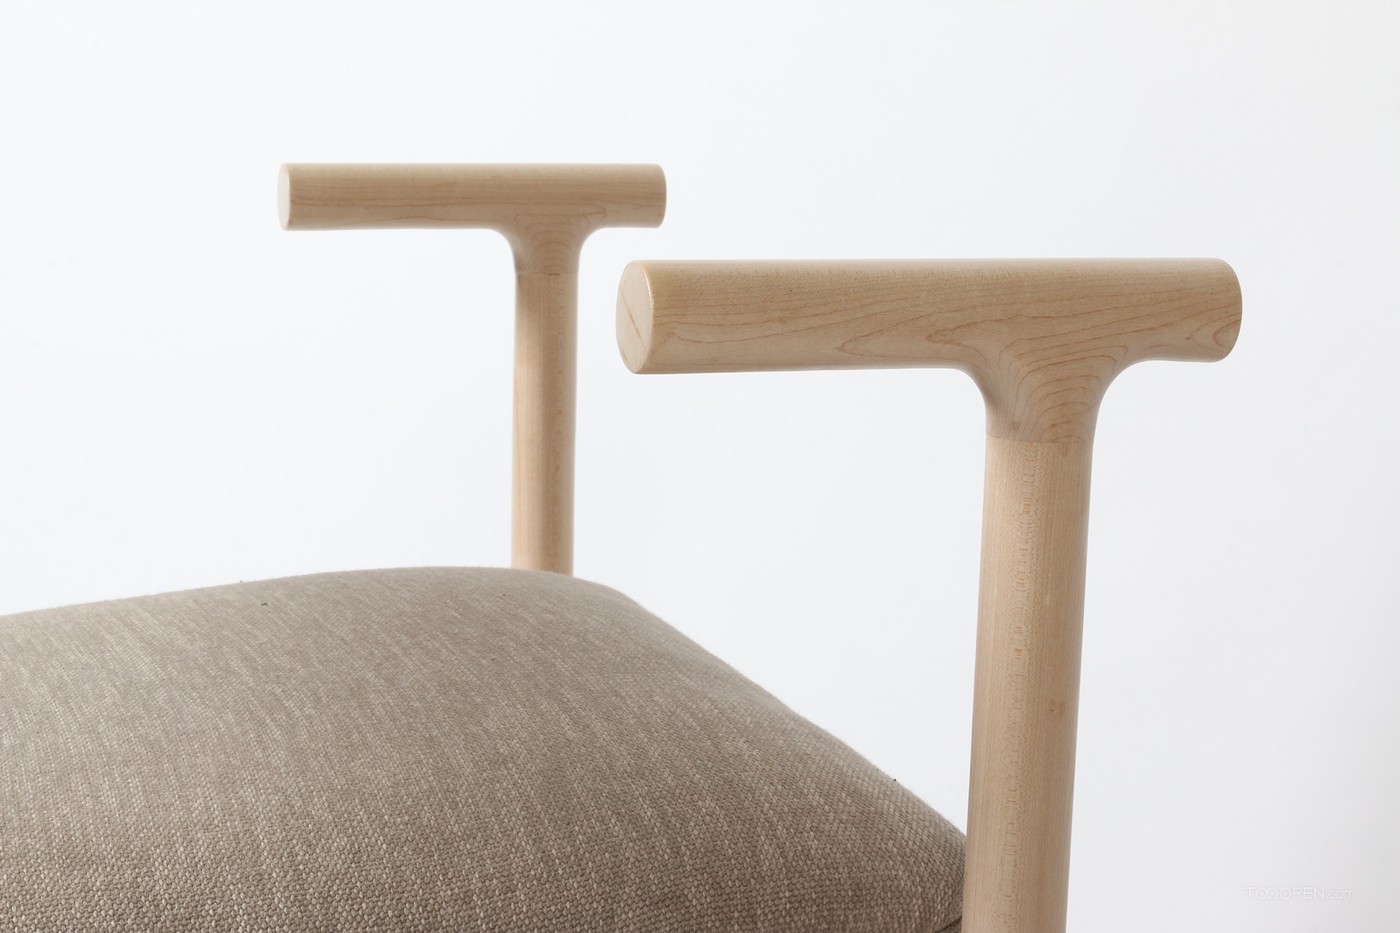 创意造型迥异木材系列家具设计欣赏-02